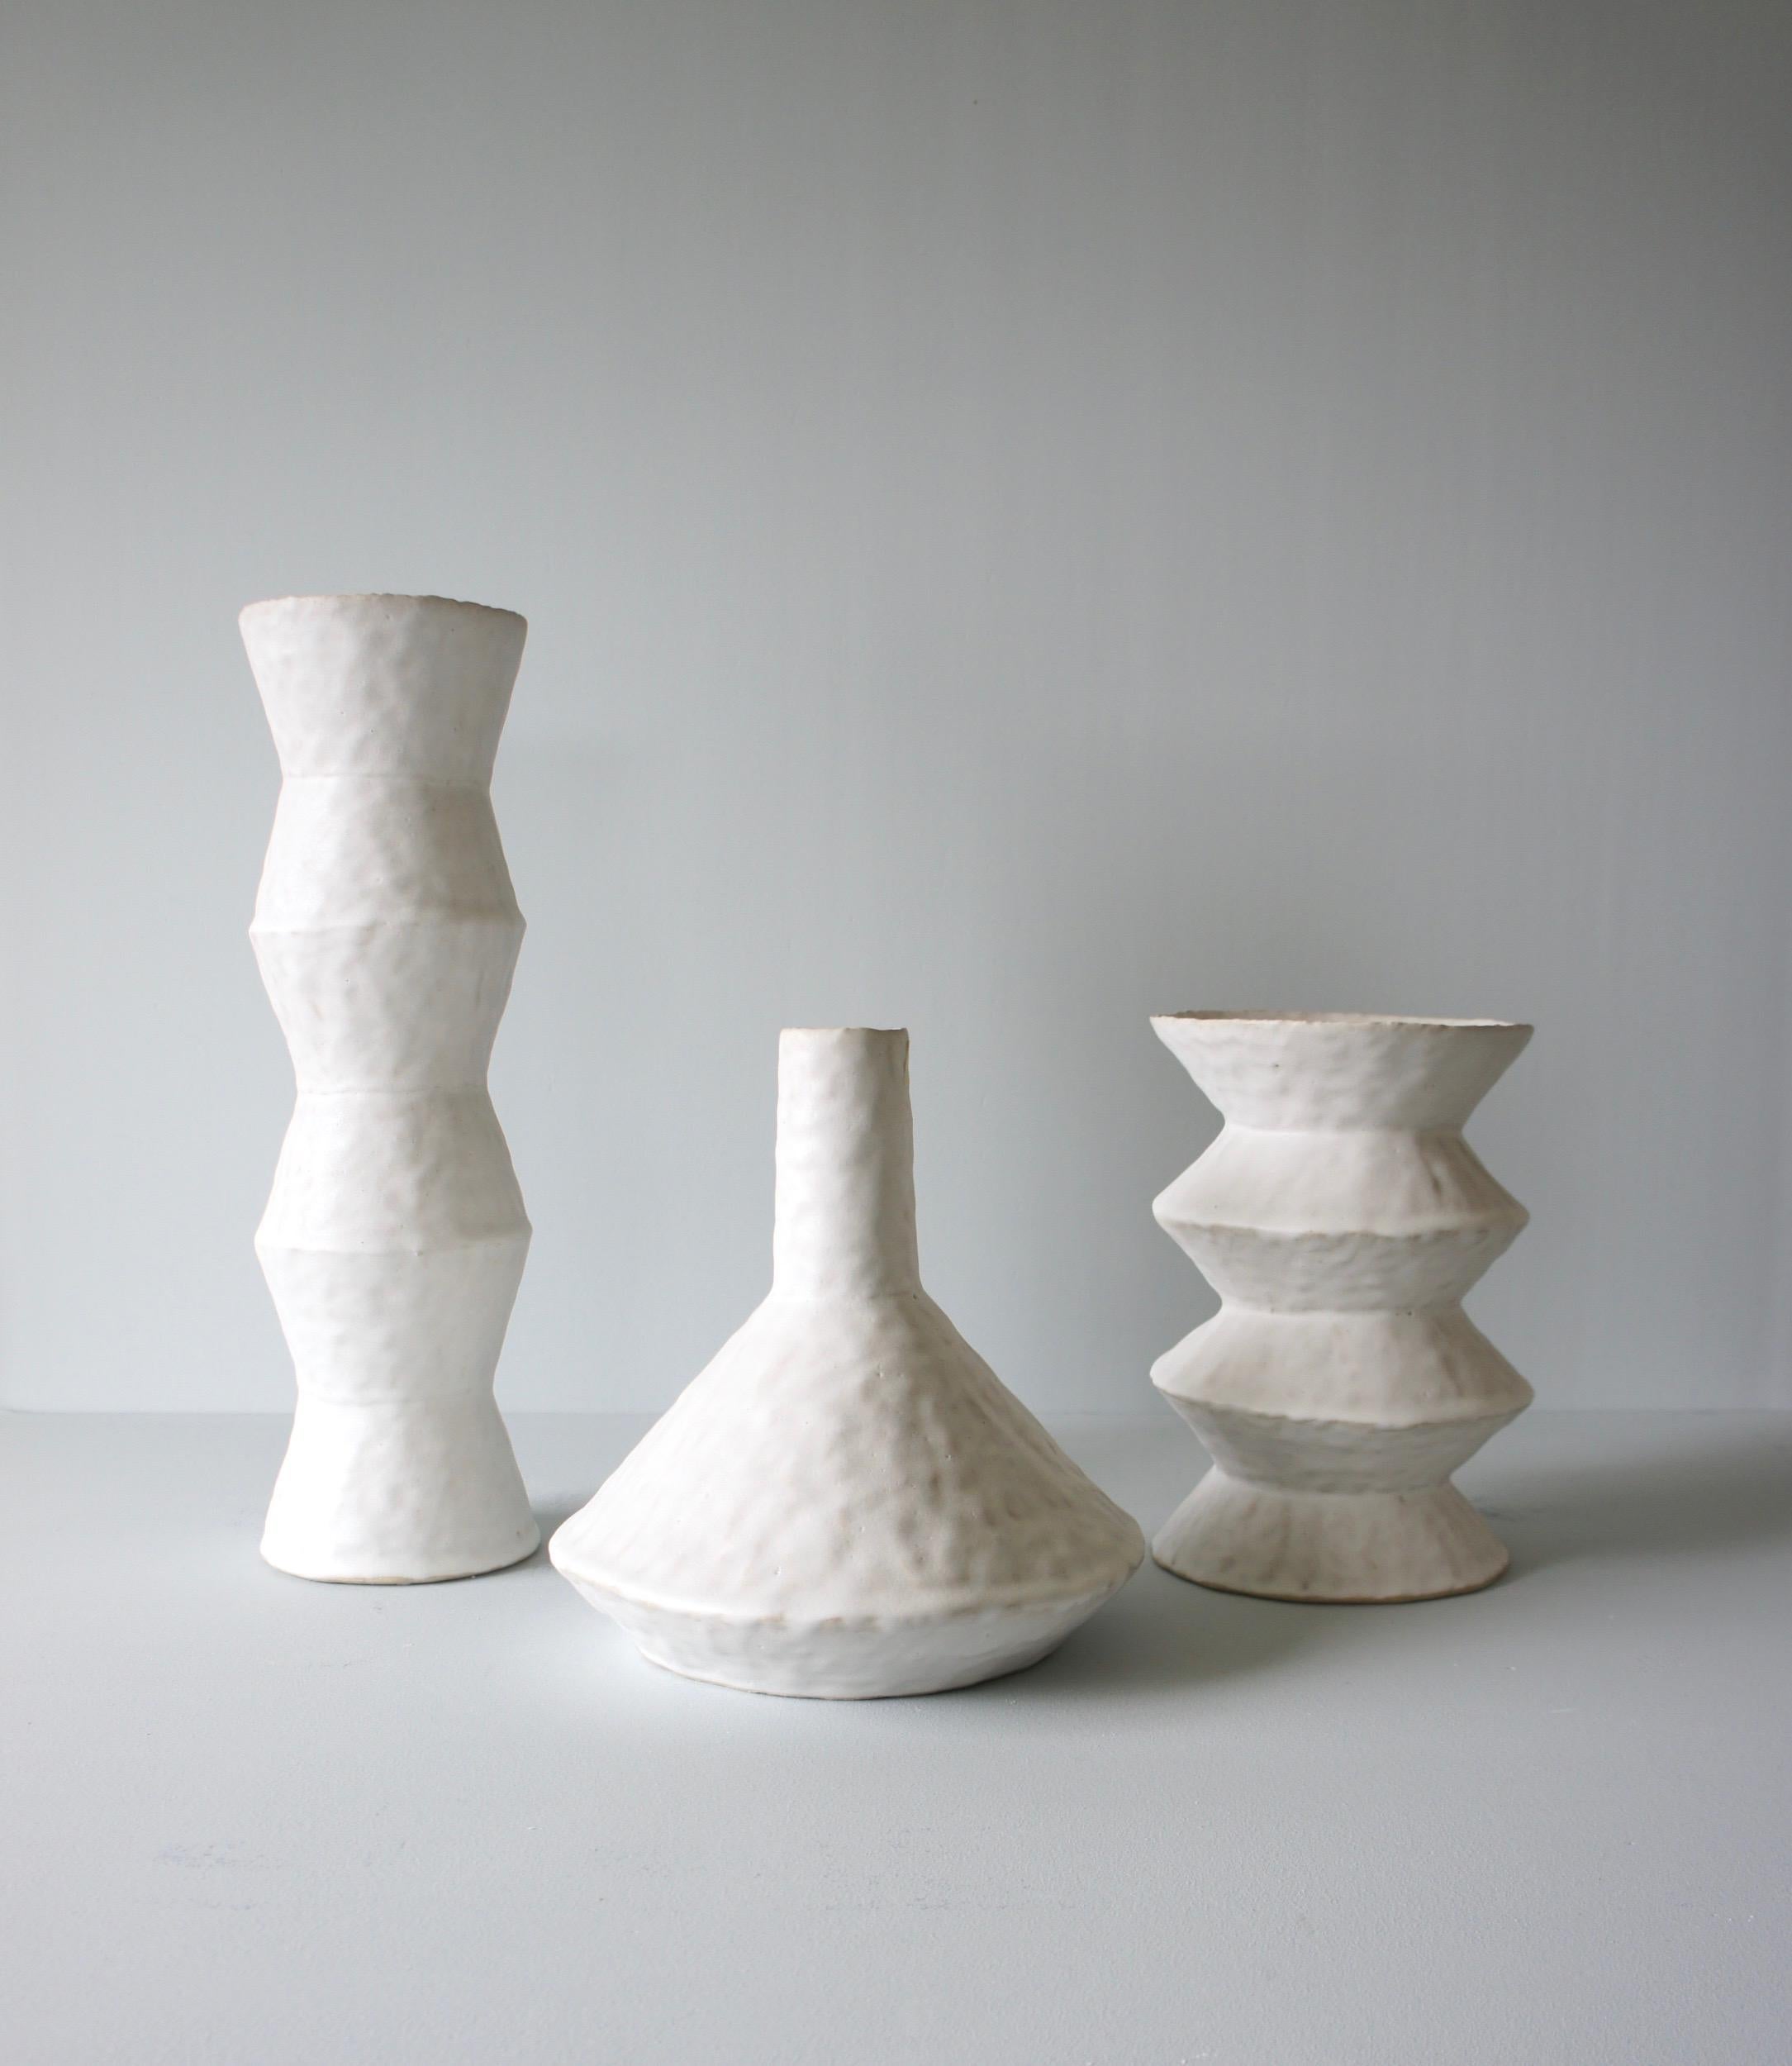 Glazed Giselle Hicks Contemporary White Ceramic Vase, 2019 For Sale